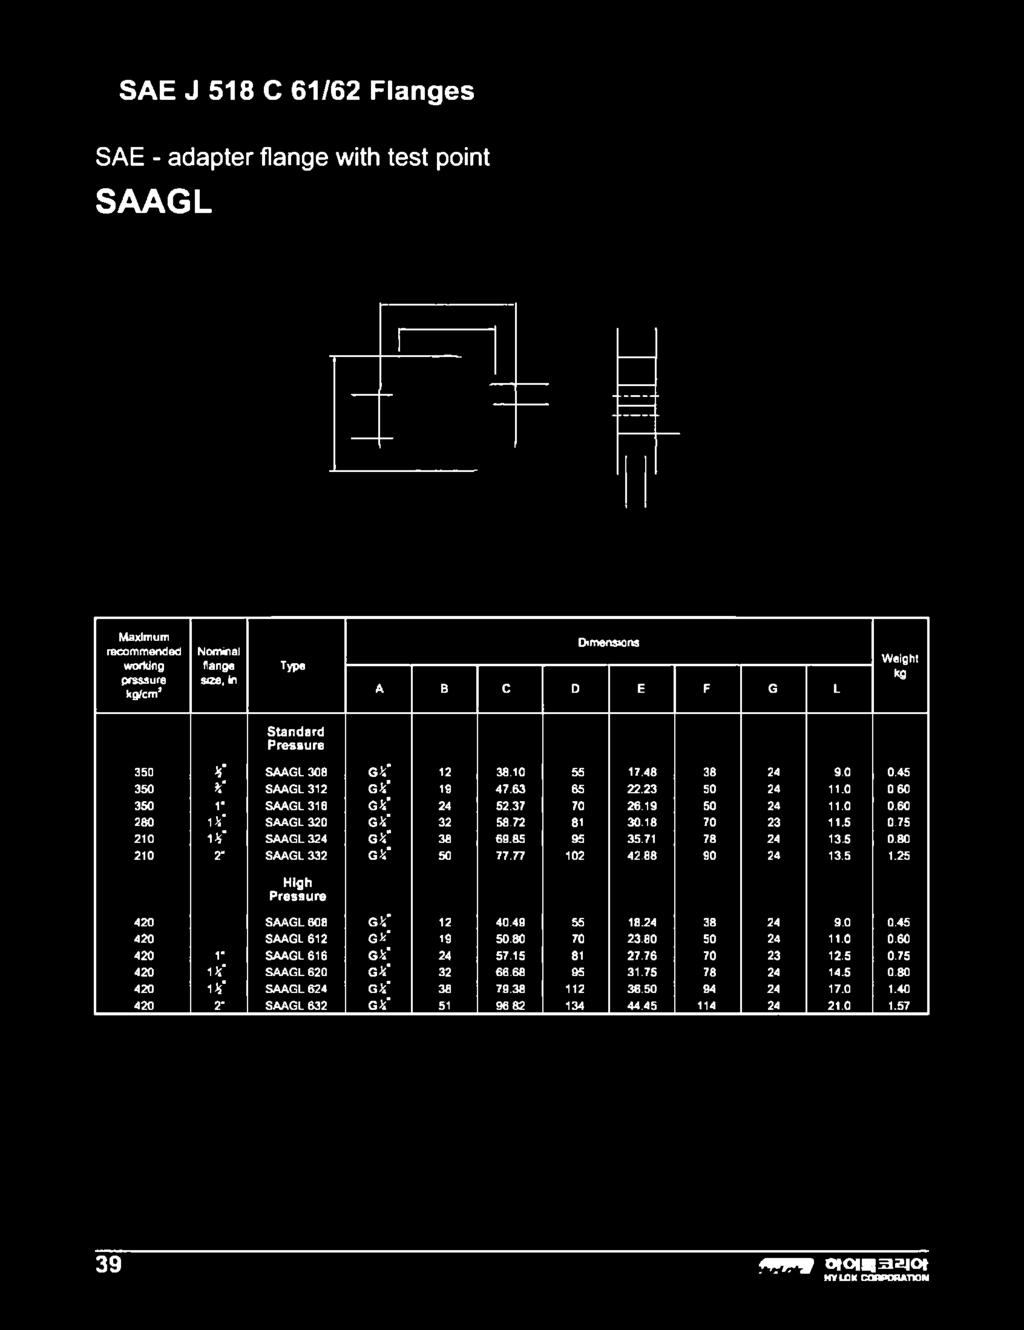 SAE - adapter flange with test point SAAGL /cm* flange sae, in Typo A в С D E F G L P ressu re 35Э H' SAAGL 308 g V 12 38.10 55 17.48 38 24 9.0 0.45 350 %' SAAGL 312 G V 19 47.63 65 22.23 50 24 11.